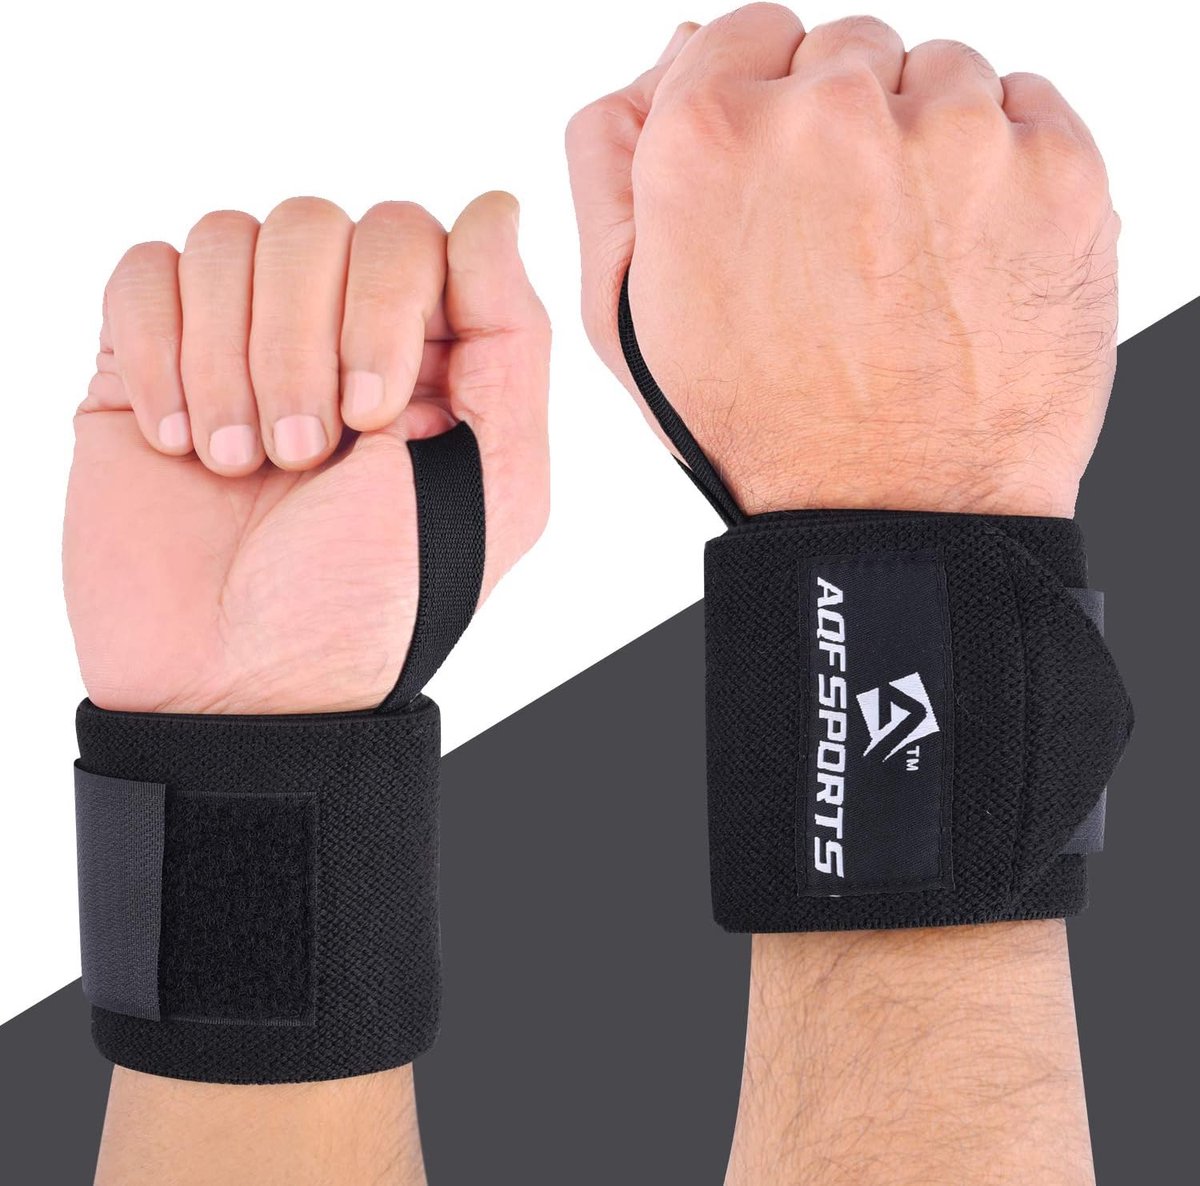 Bande Poignet Musculation - Protège Poignet 45 cm en Paire Bandage